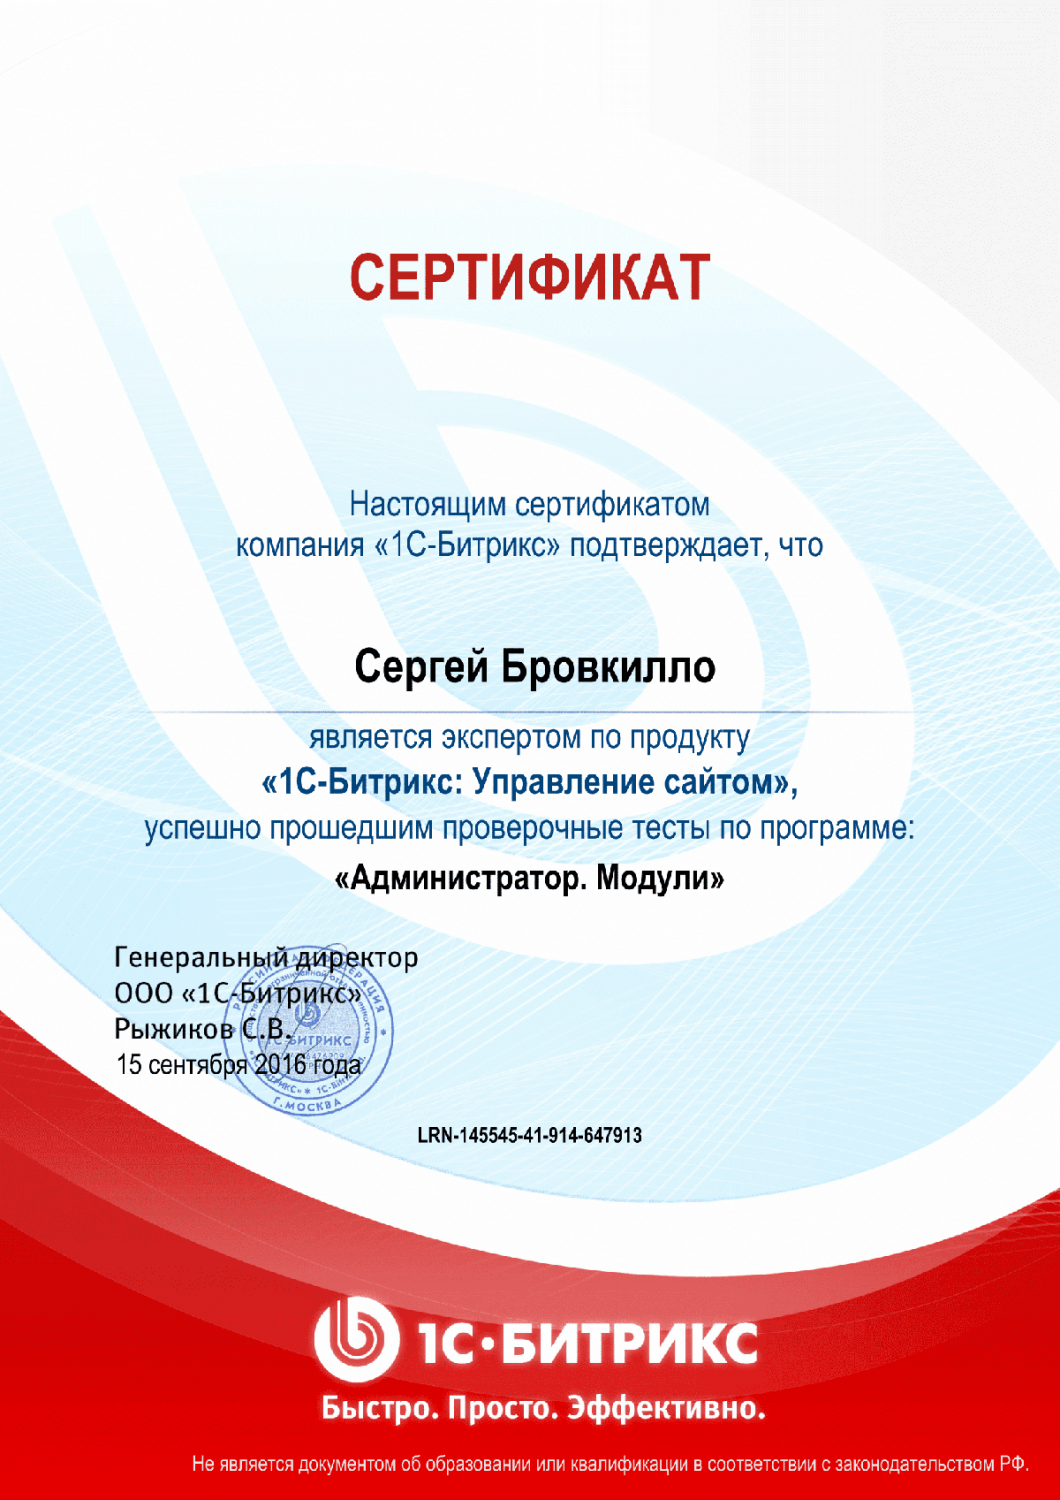 Сертификат эксперта по программе "Администратор. Модули" в Ставрополя